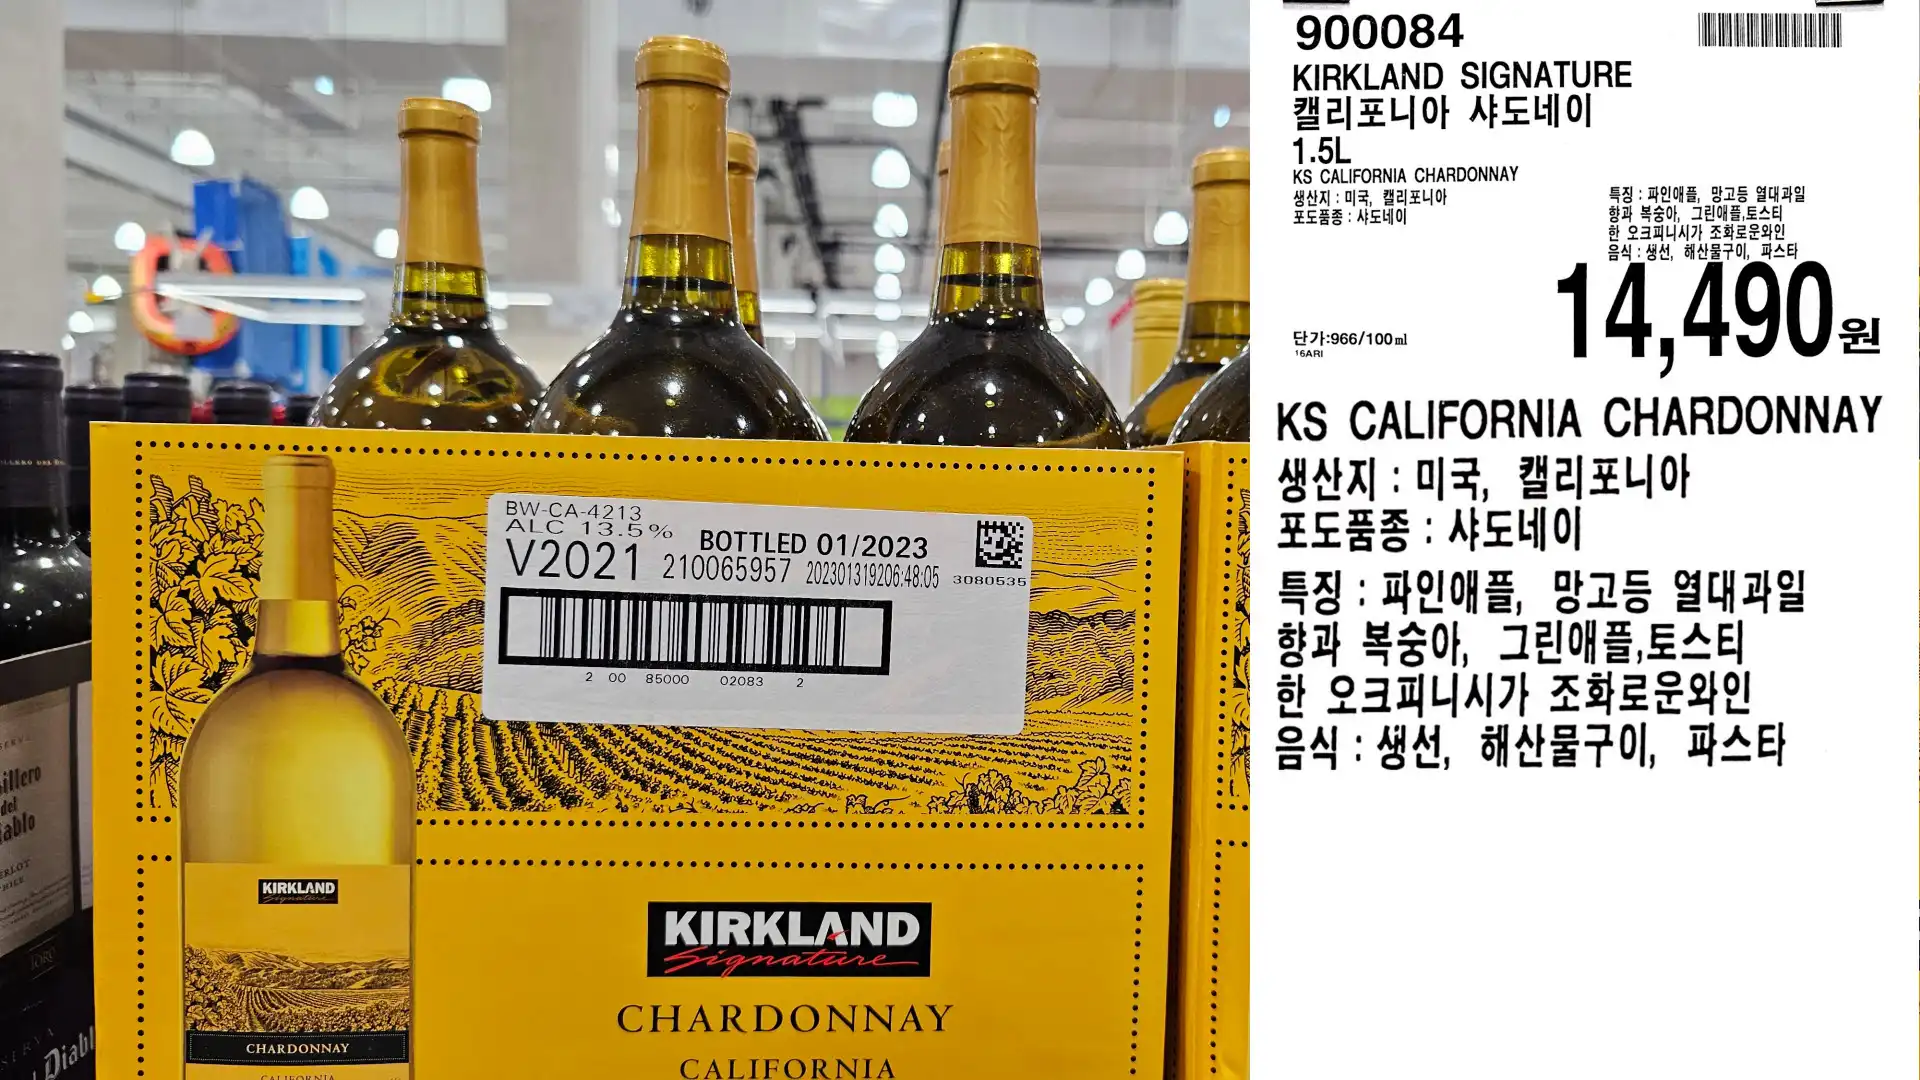 KIRKLAND SIGNATURE
캘리포니아 샤도네이
1.5L
KS CALIFORNIA CHARDONNAY
생산지 : 미국 캘리포니아
포도품종: 샤도네이
단가:966/100ml
14,490원